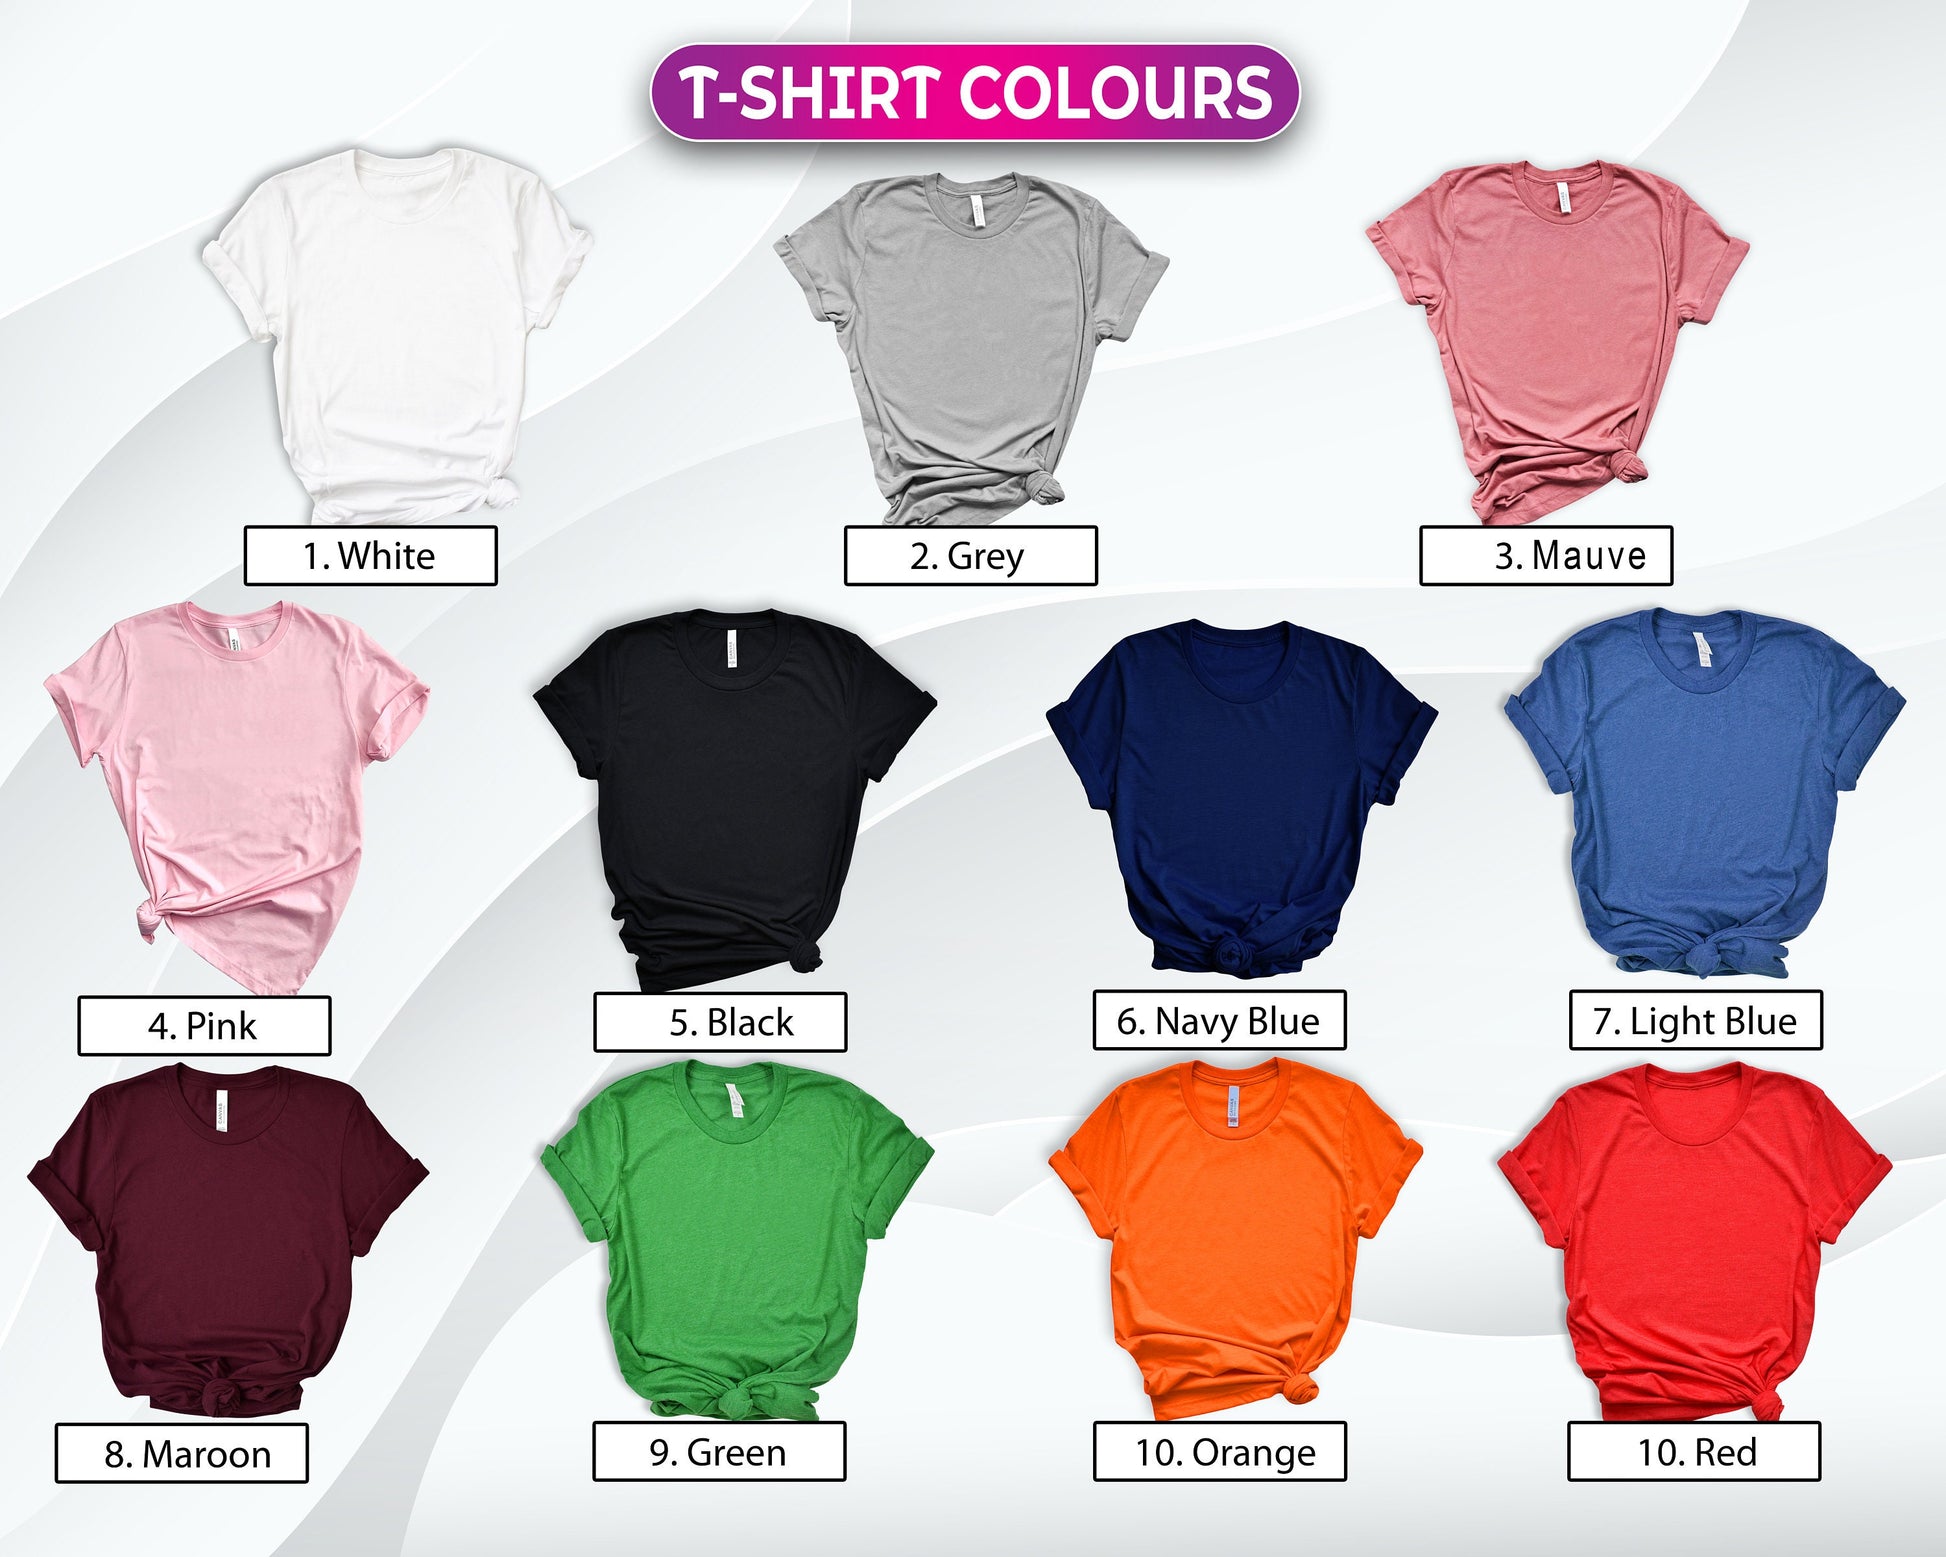 Original 1963 T-Shirt Colors